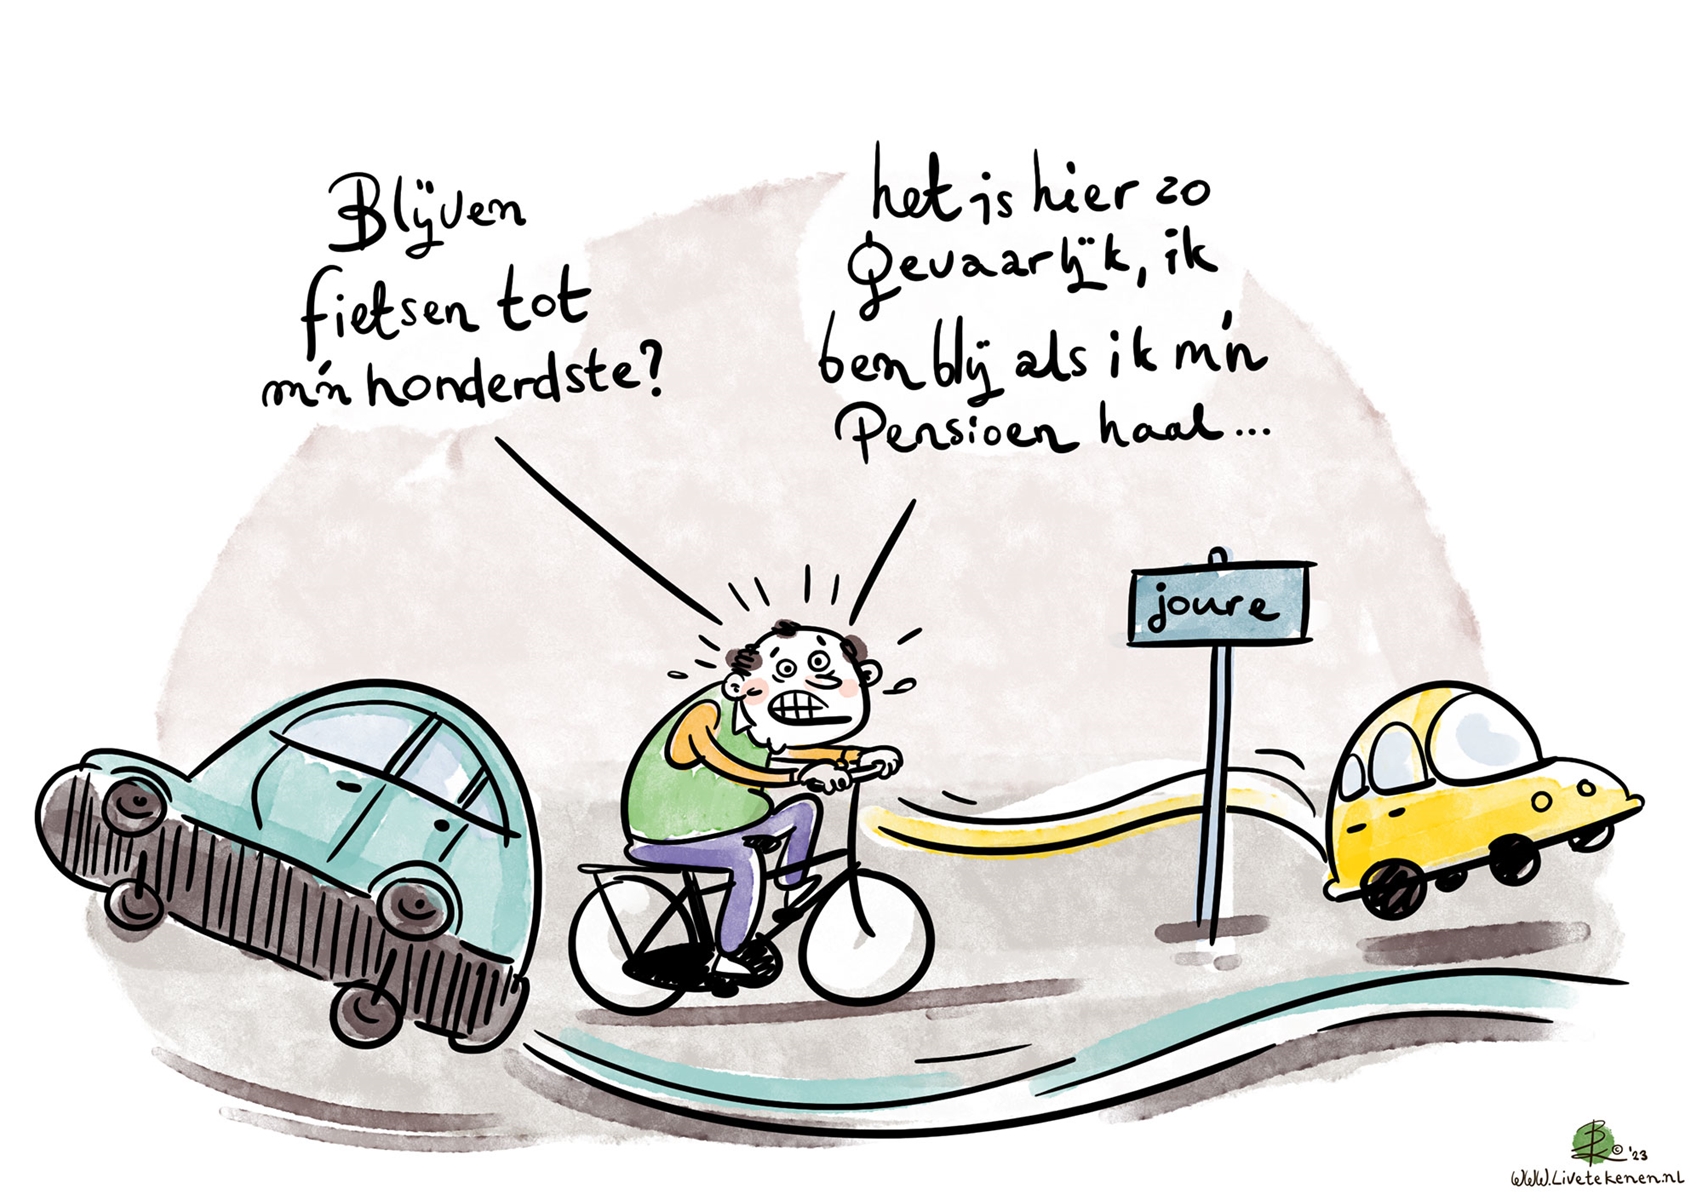 Cartoon met de tekst 'Blijven fietsen tot m'n honderdste?' 'Het is hier zo gevaarlijk, ik ben blij als ik m'n pensioen haal...'